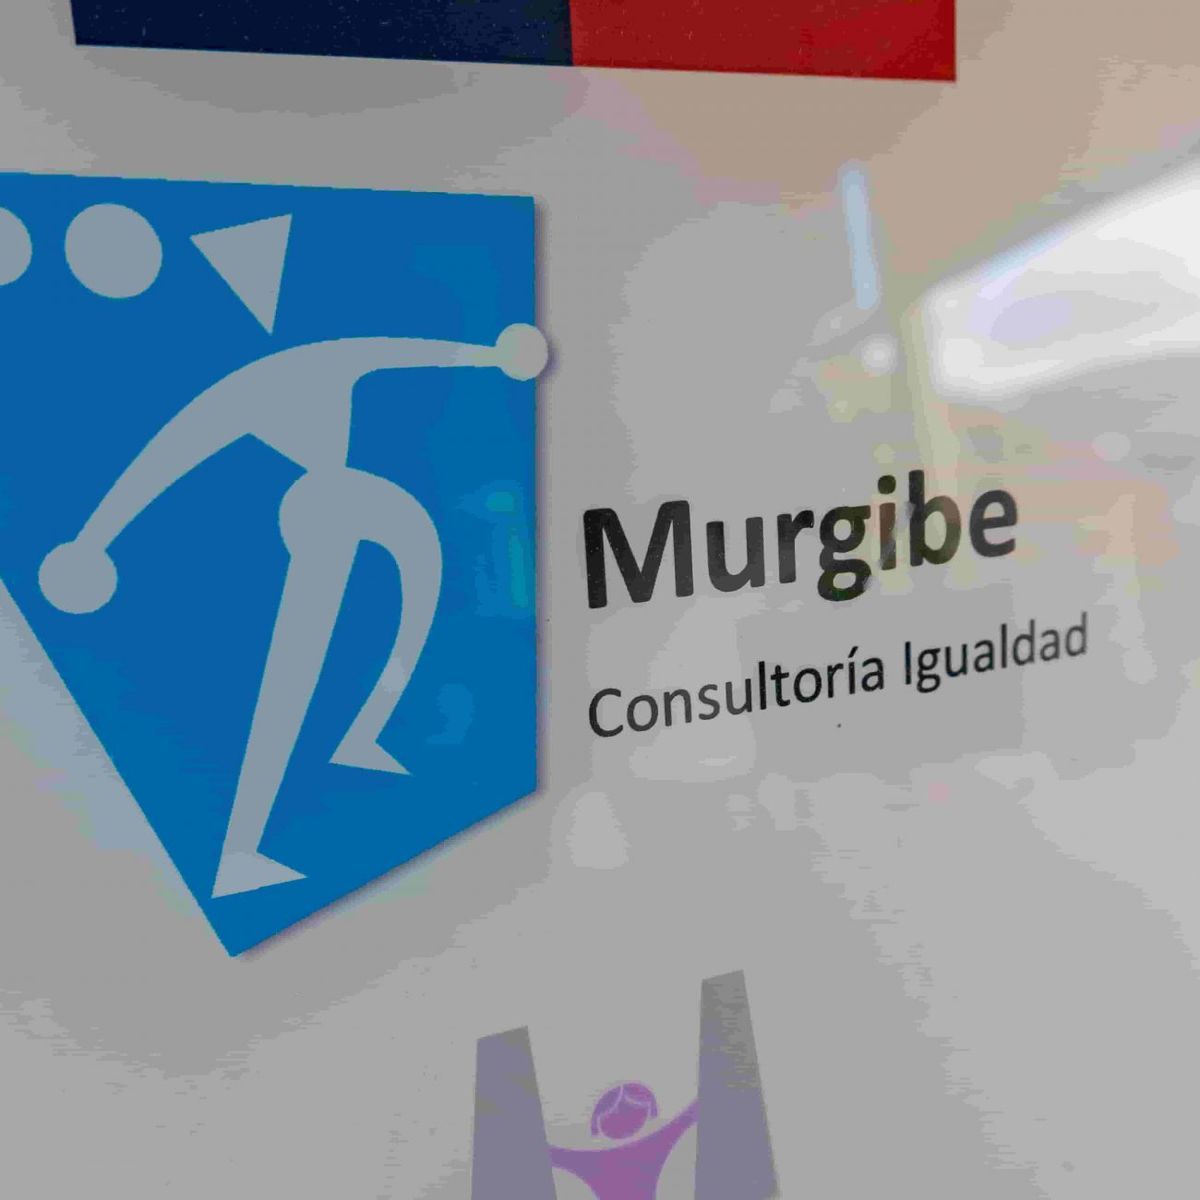 Murgibe, consultoria de Igualdad